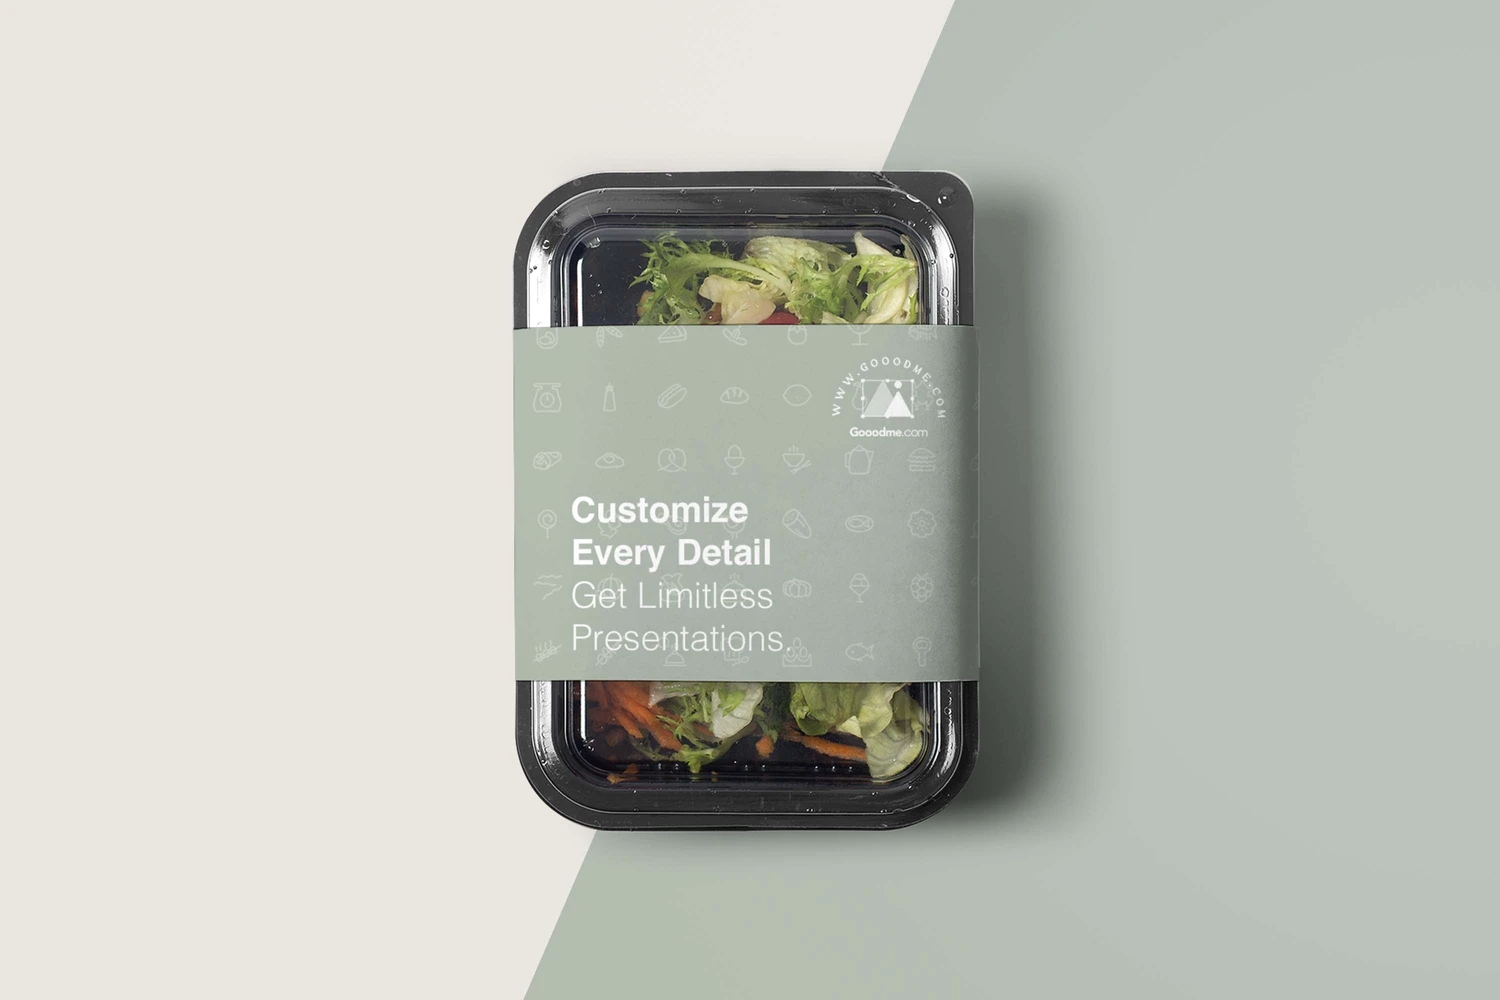 18款轻食沙拉品牌VI样机网红轻食沙拉食品品牌VI提案样机素材包YC245